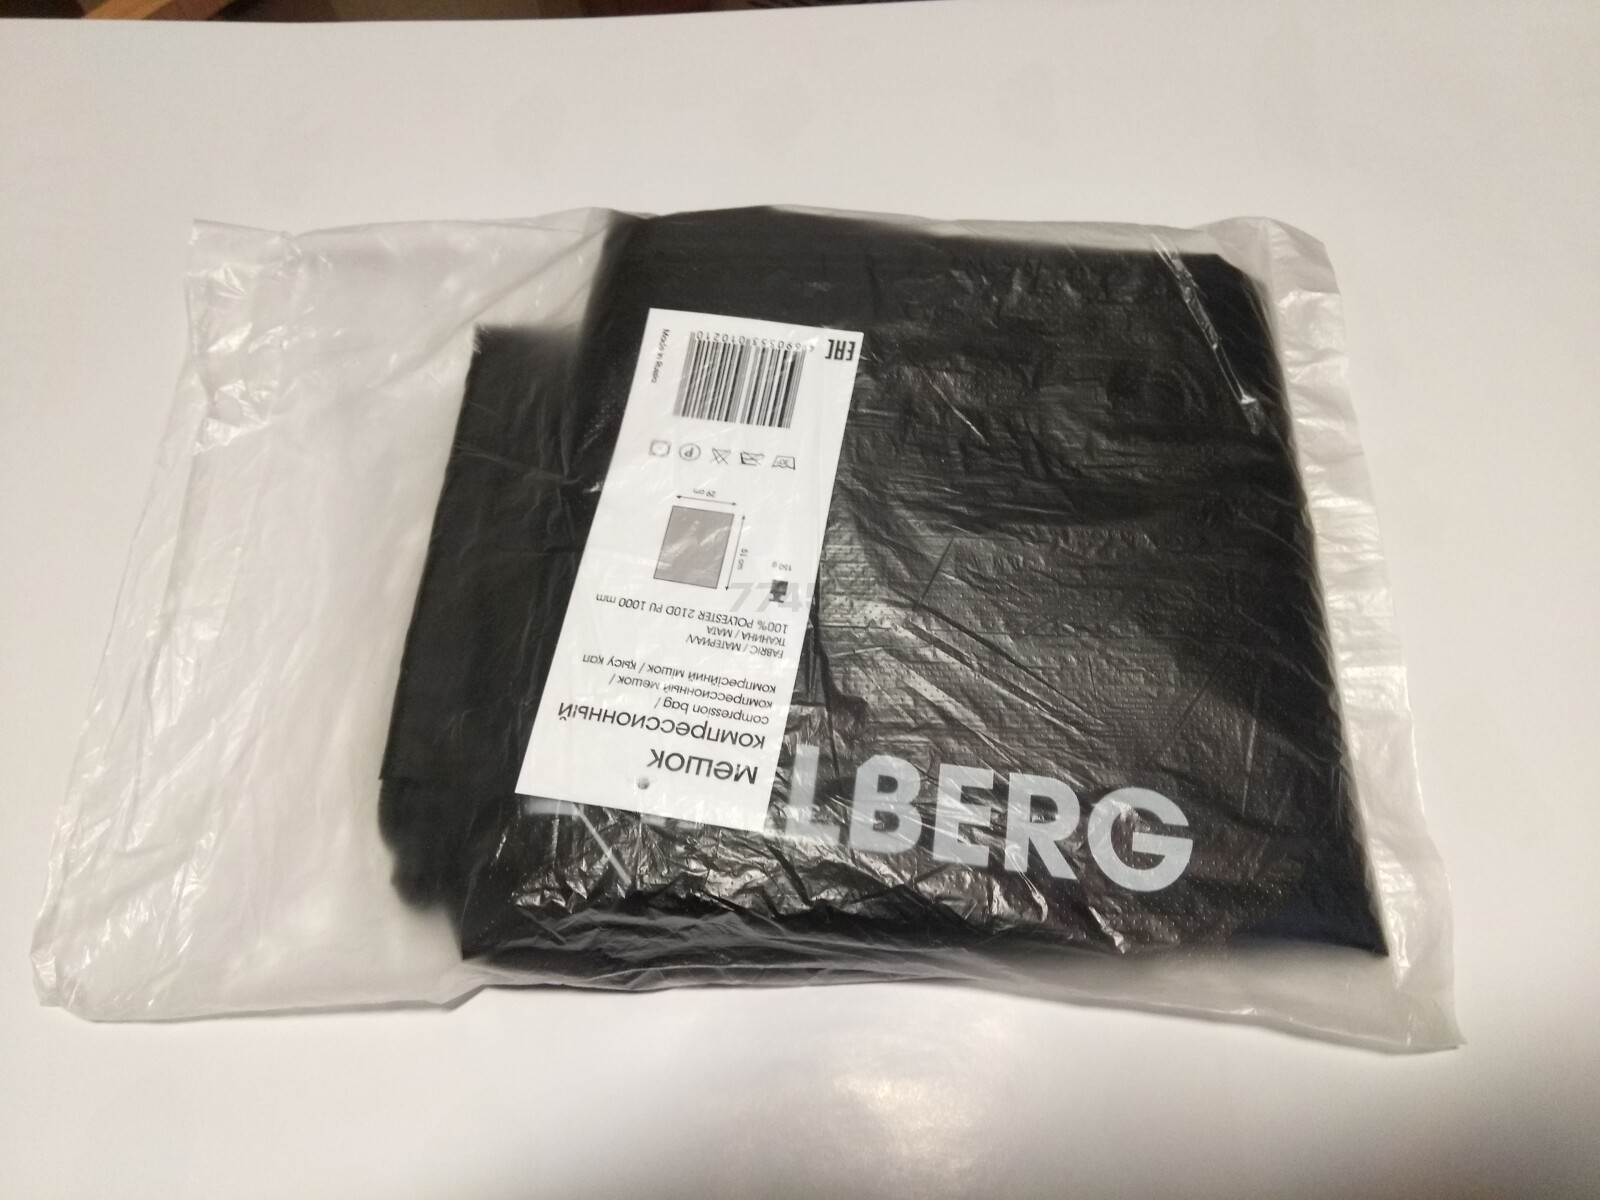 Компрессионный мешок TALBERG Compression Bag - Фото 4